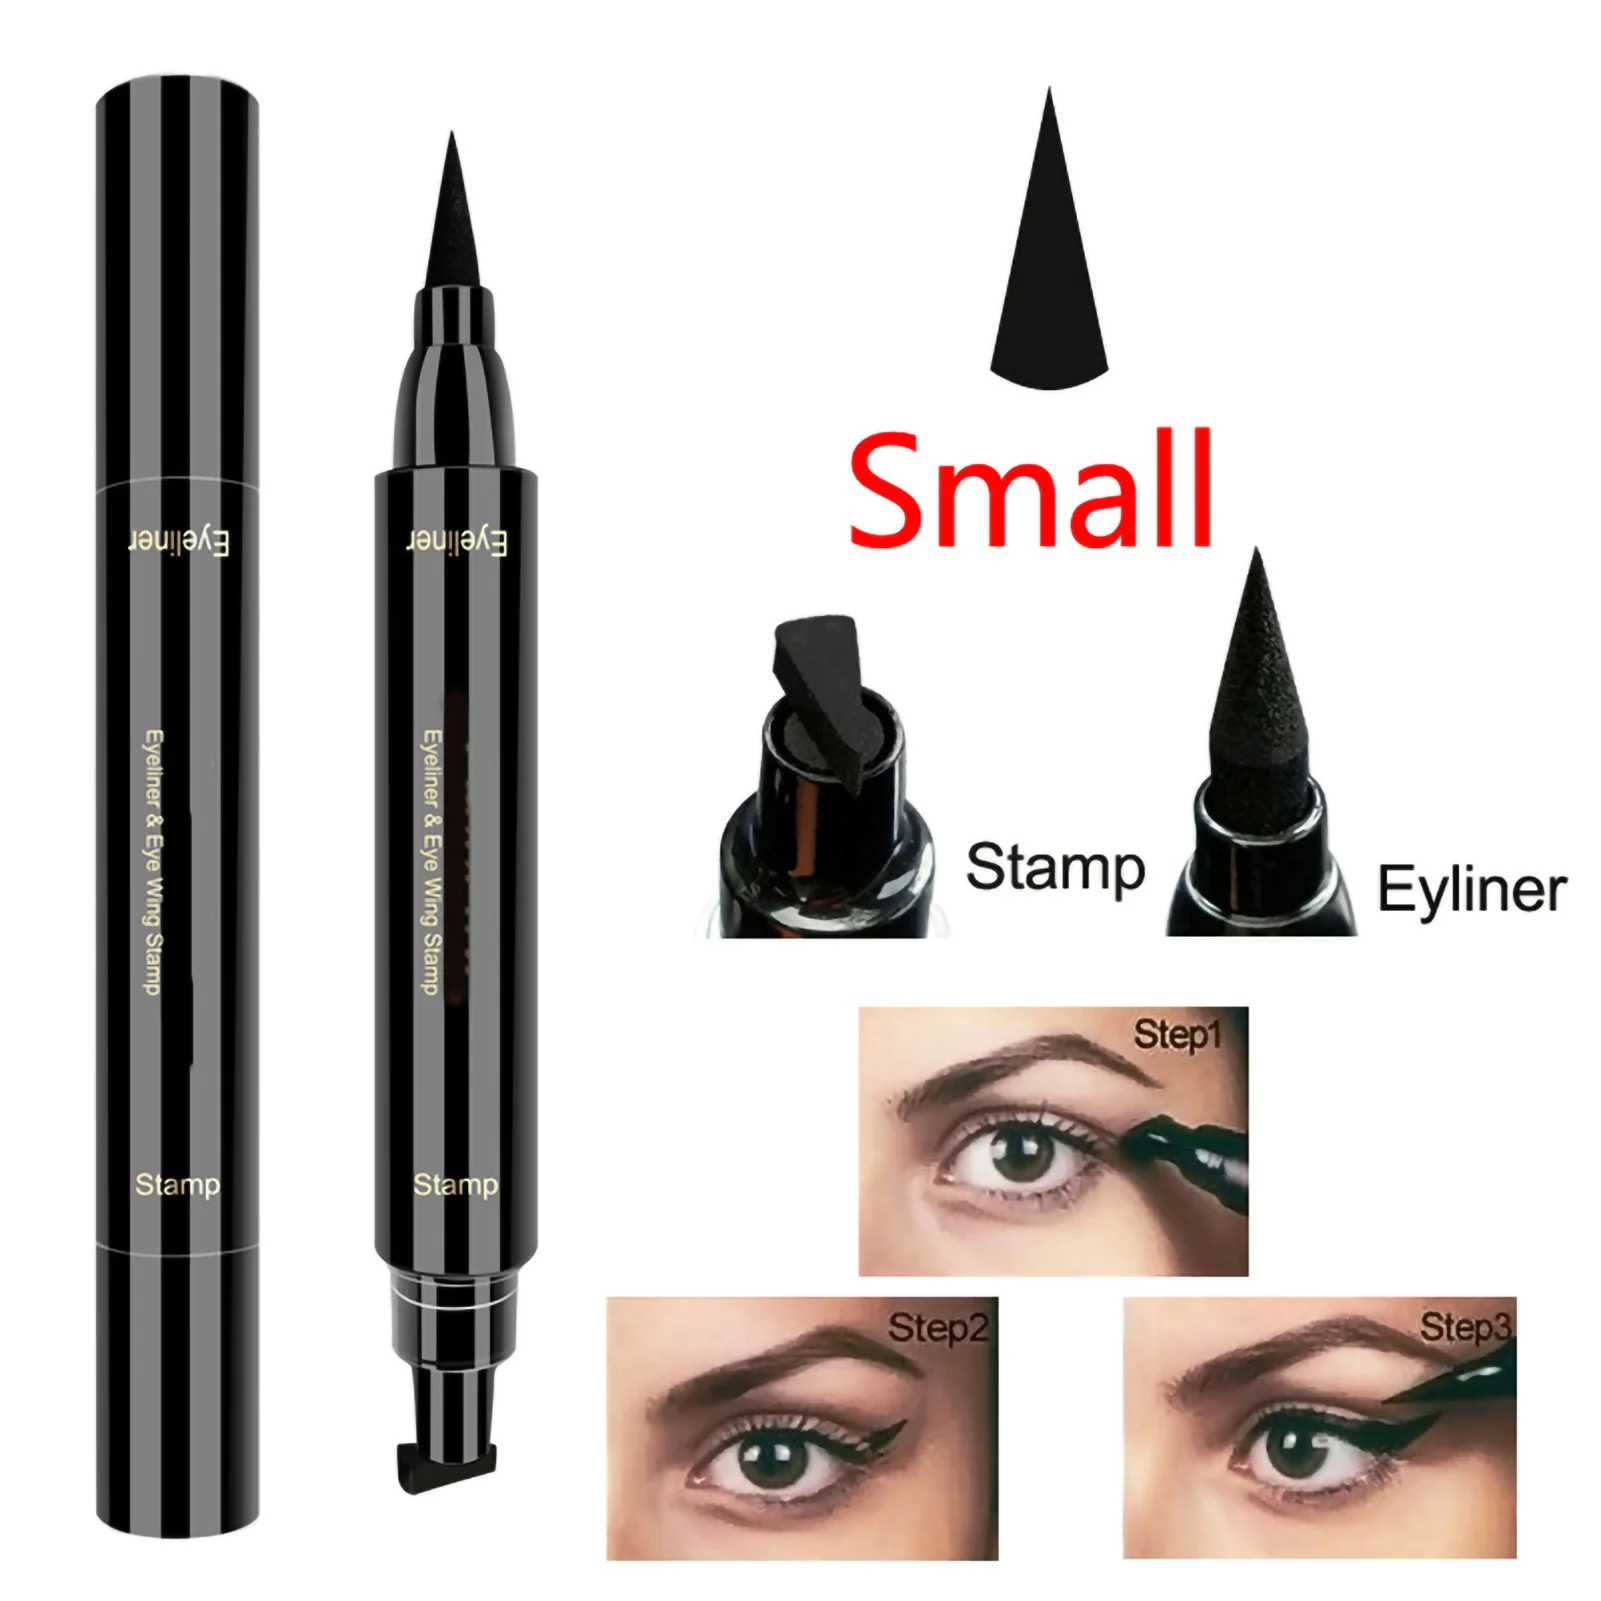 

"Waterproof Winged Eyeliner Stamp Pen for Vamp or Cat Eye - Smudge Proof & Long Lasting Dual-Ended Liquid Eye Liner"